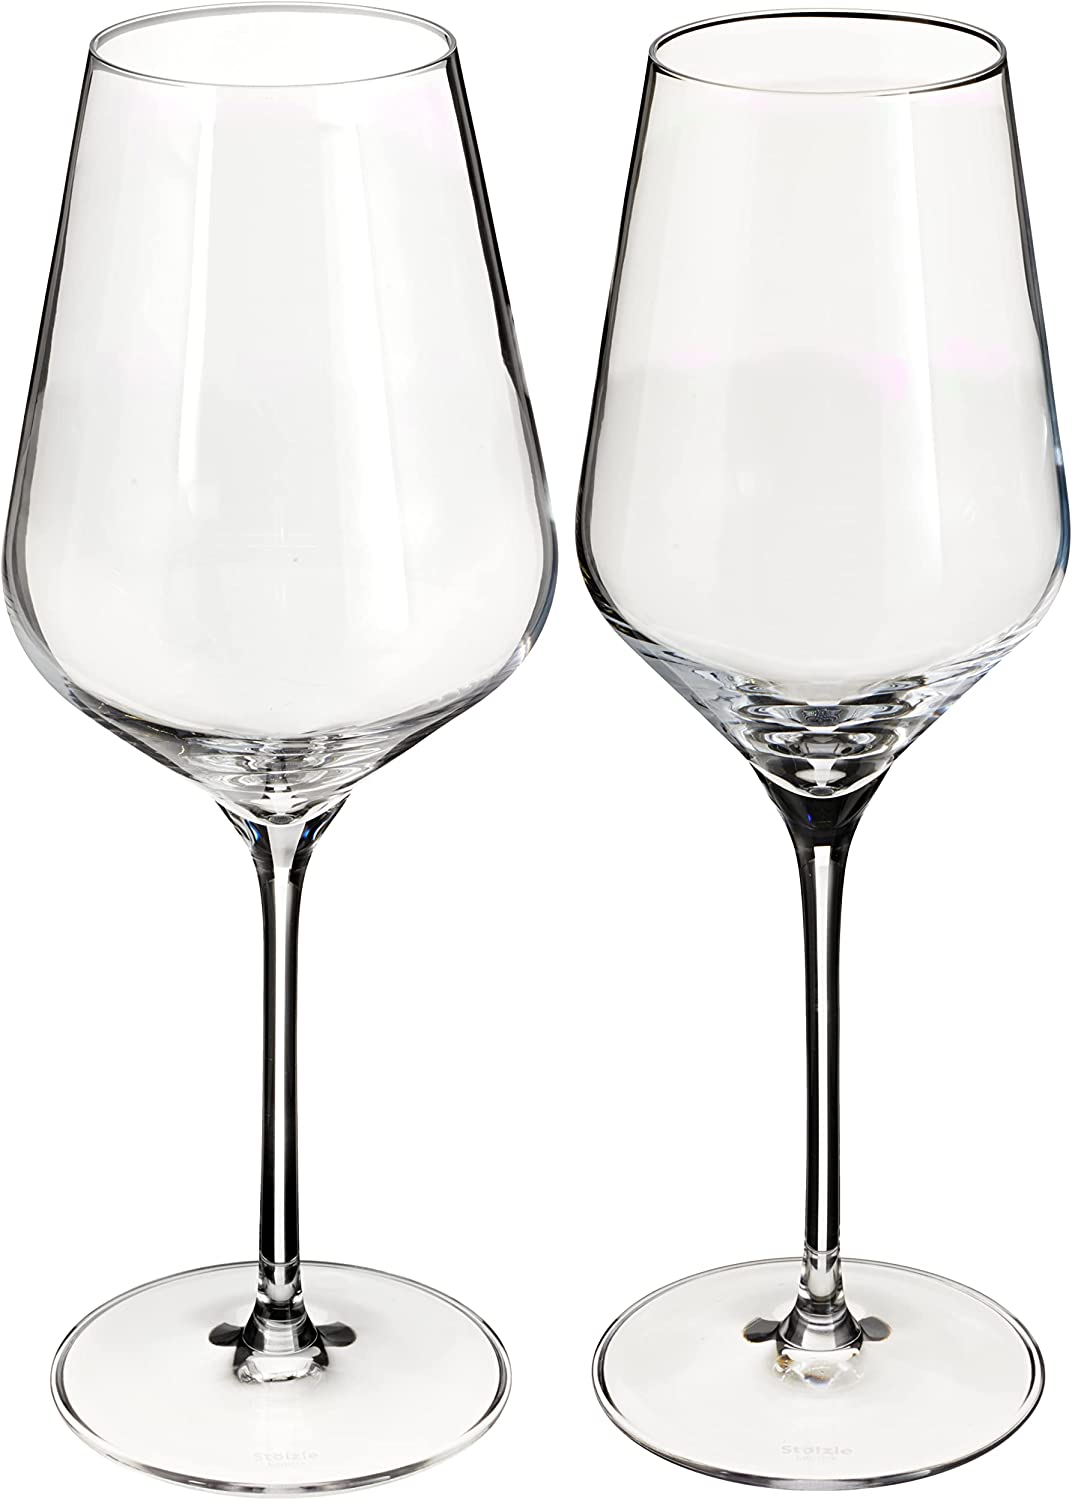 Stölzle Lausitz - Quatrophil 12-piece glass set with 6 red wine glasses and 6 white wine glasses, 12-piece set, dishwasher-safe, shatterproof, like mouth-blown, elegant crystal glass, 12-piece Quatrophil transparent